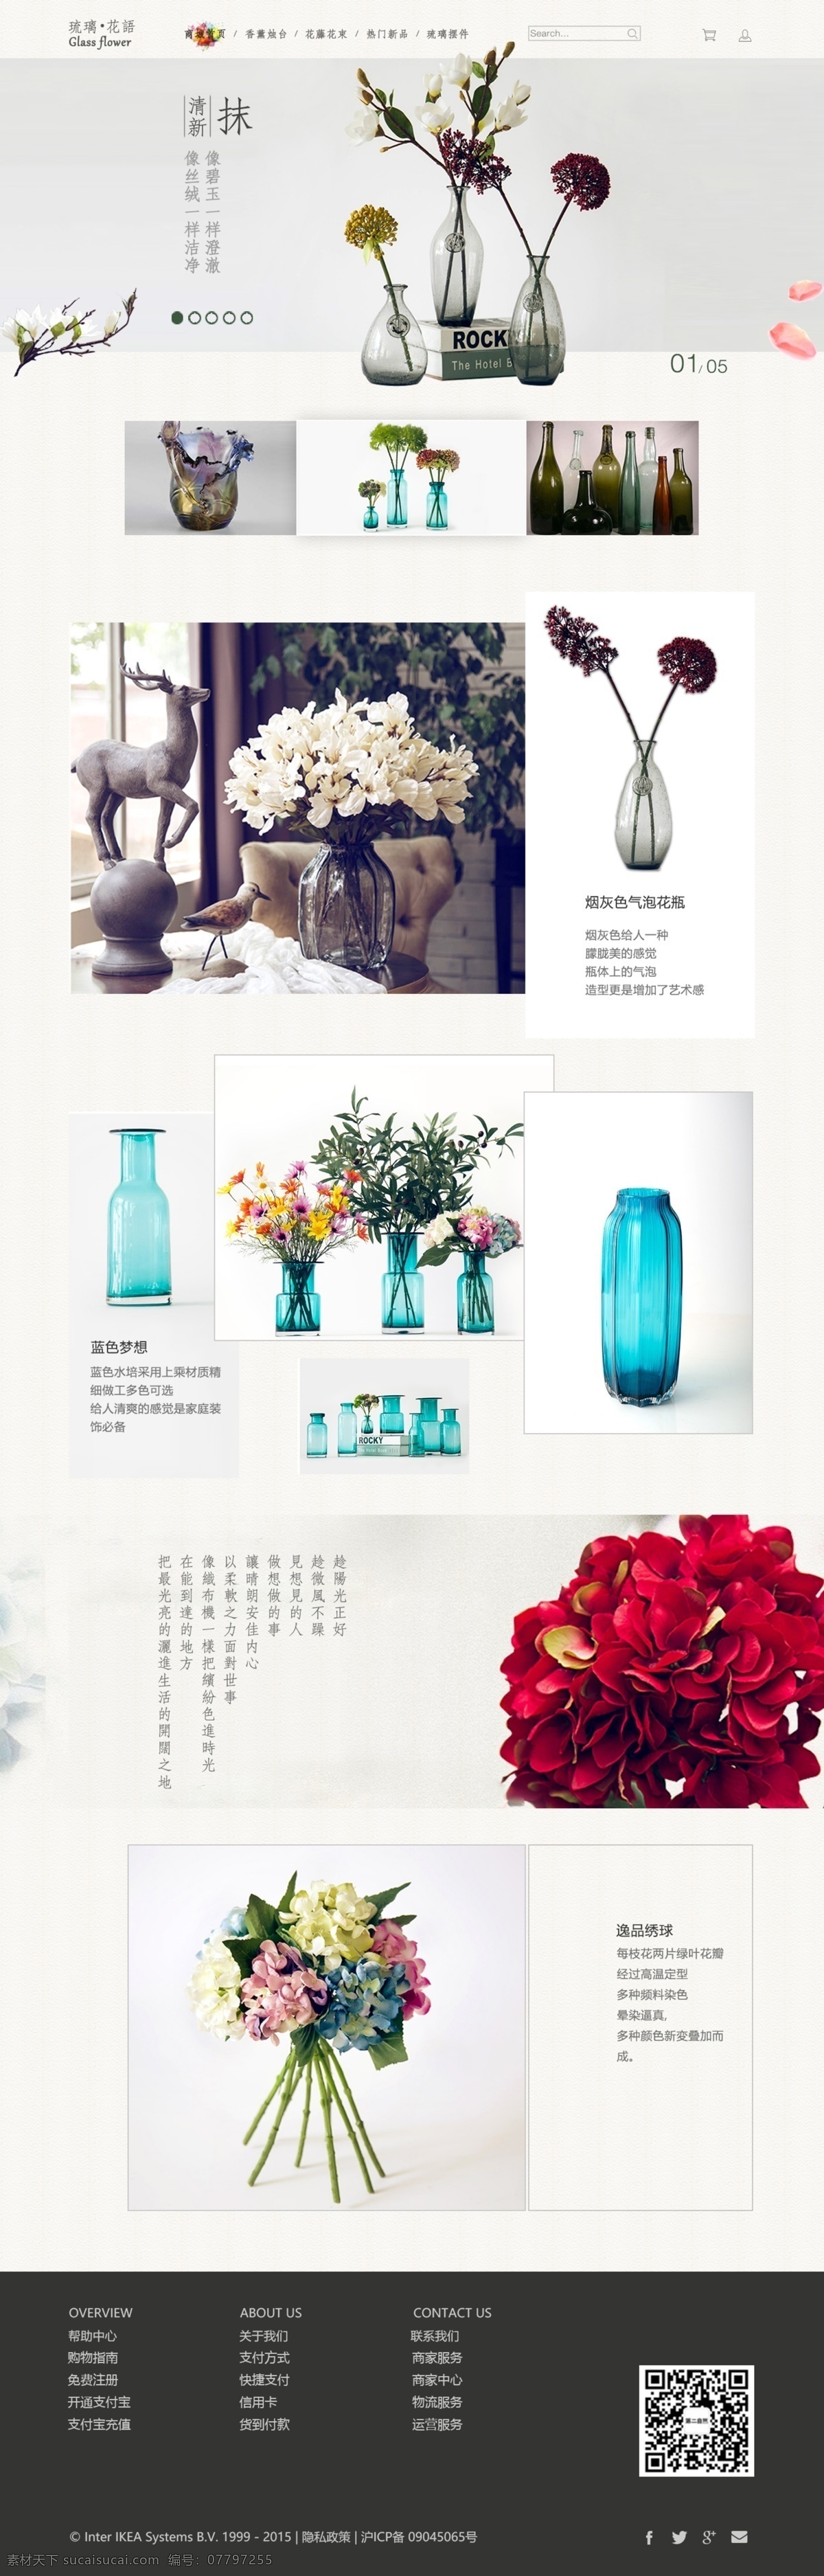 琉璃 花语 电商 首页 花瓶 小清新 日式 垂直门店 白色